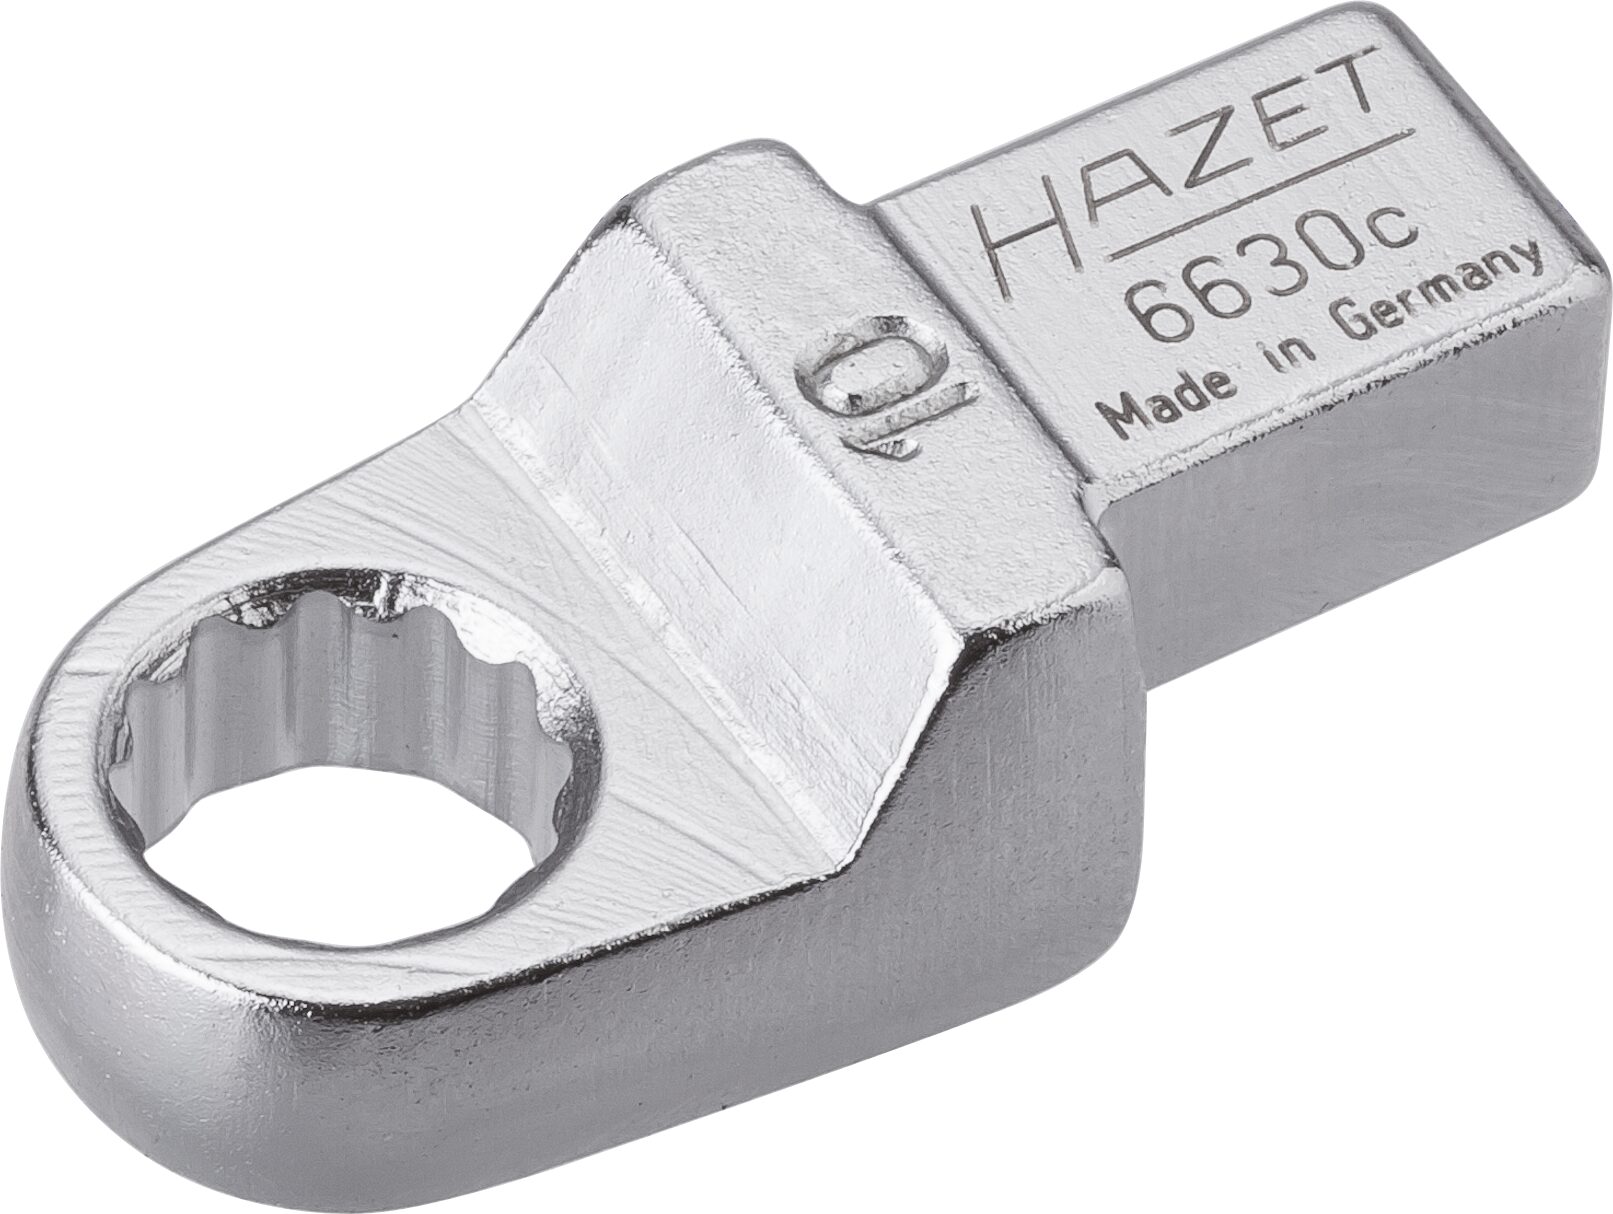 HAZET Einsteck-Ringschlüssel 6630C-10 · Einsteck-Vierkant 9 x 12 mm · Außen Doppel-Sechskant-Tractionsprofil · 10 mm